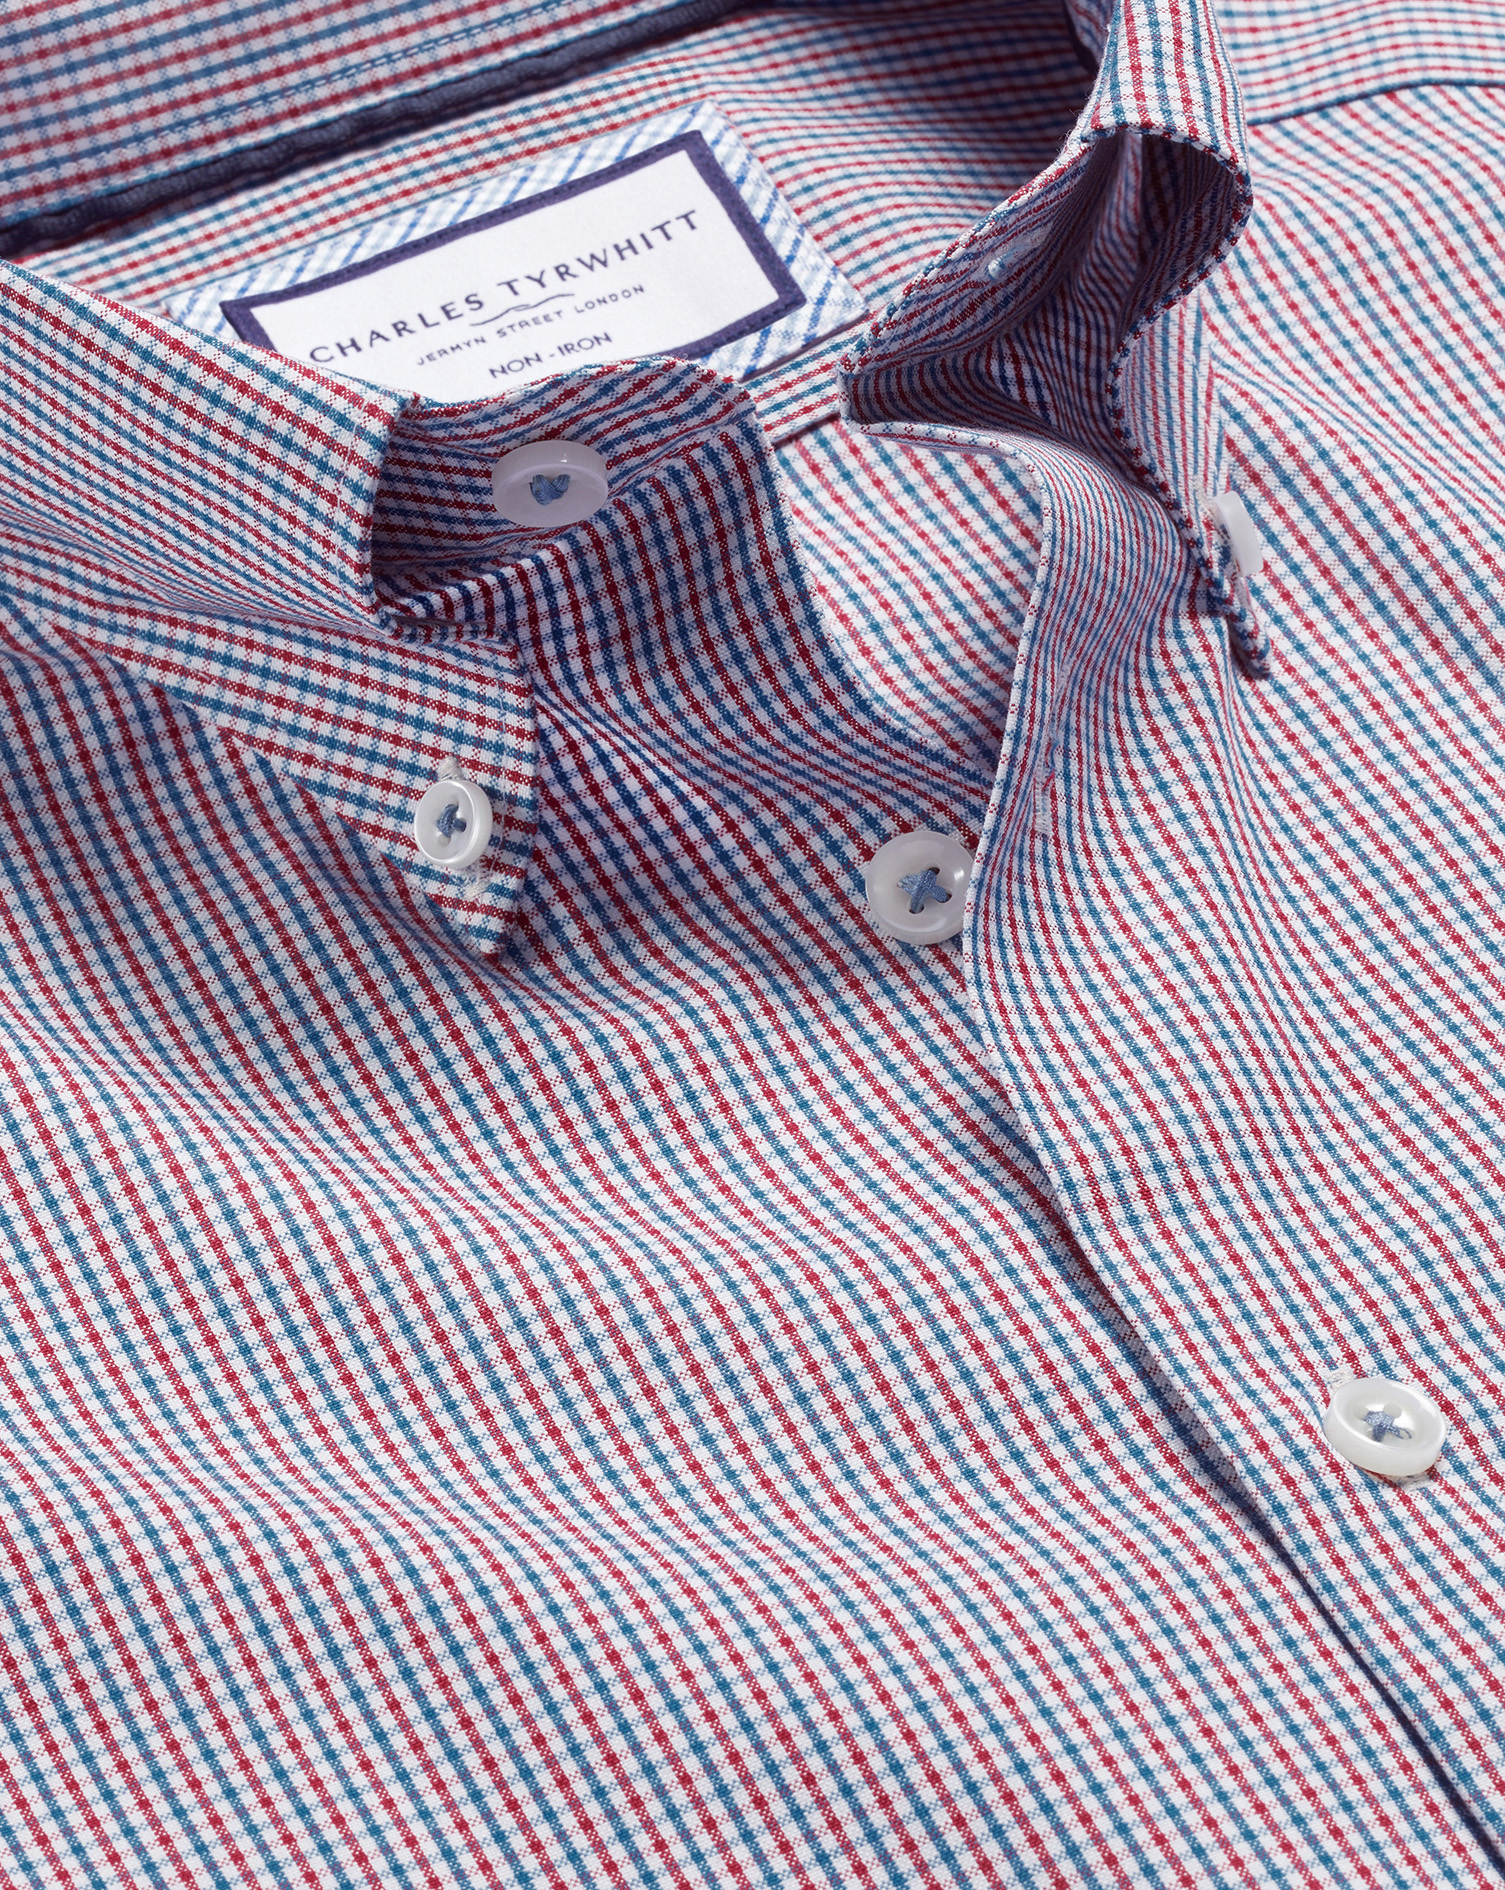 Charles Tyrwhitt Bügelfreies Hemd mit Button-down-Kragen und Gingham-Karos - Rot Knopfmanschette von Charles Tyrwhitt